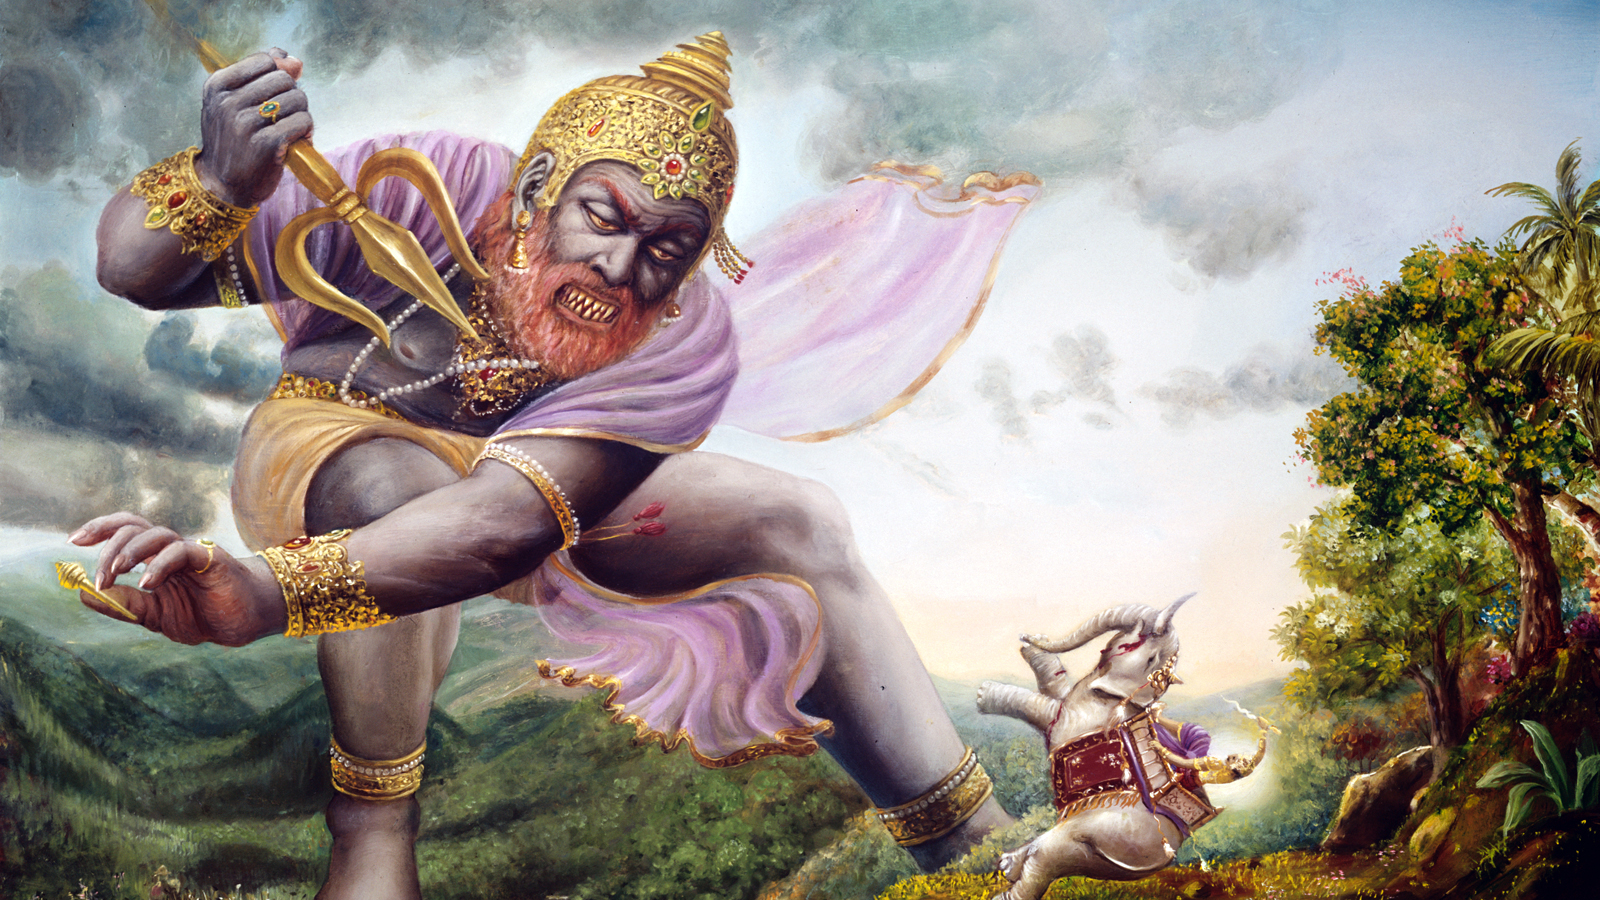 Vritrasura attacks Indra